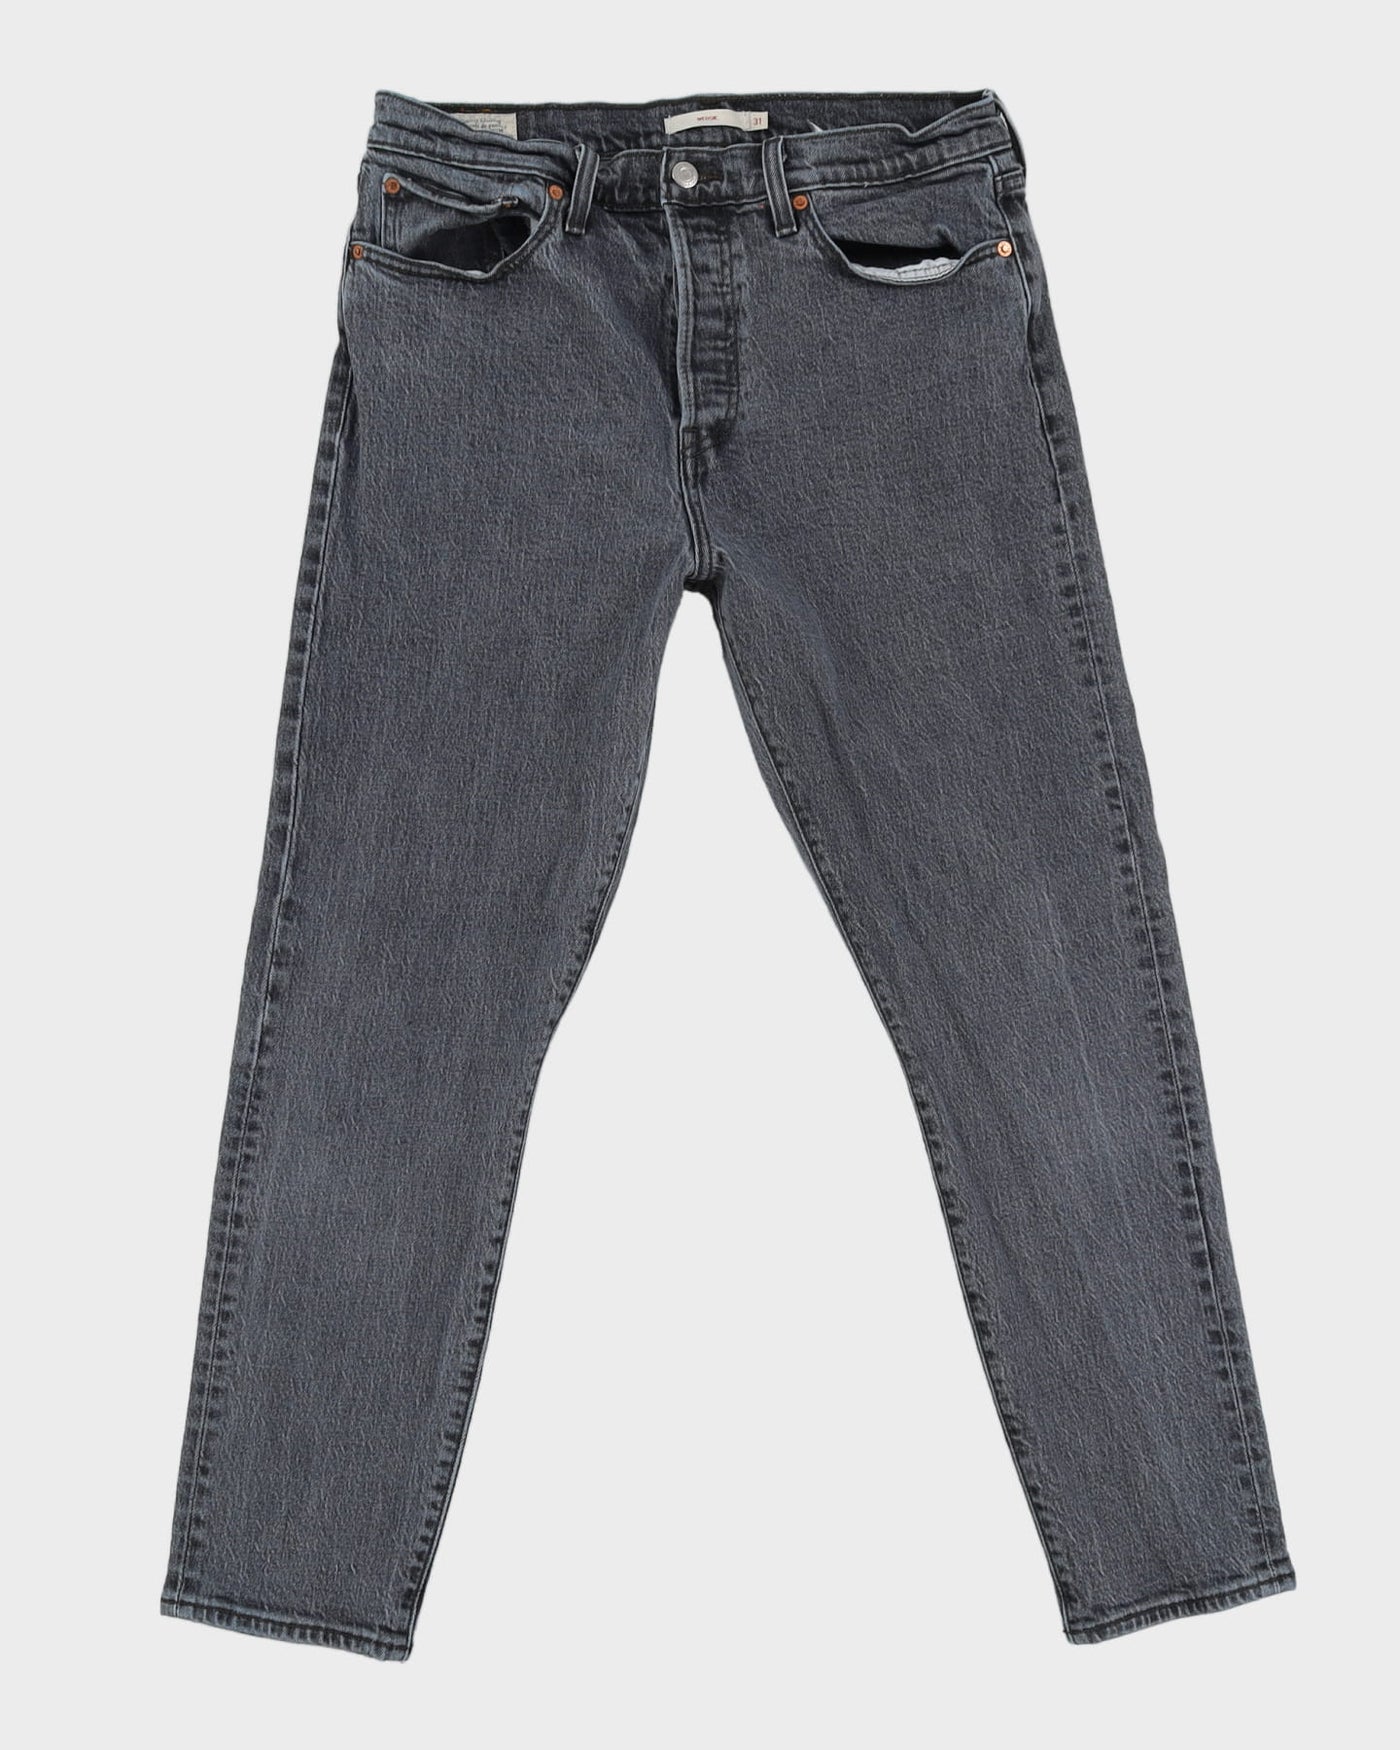 Levi's Big E Re-Pro Blue Jeans - W31 L29